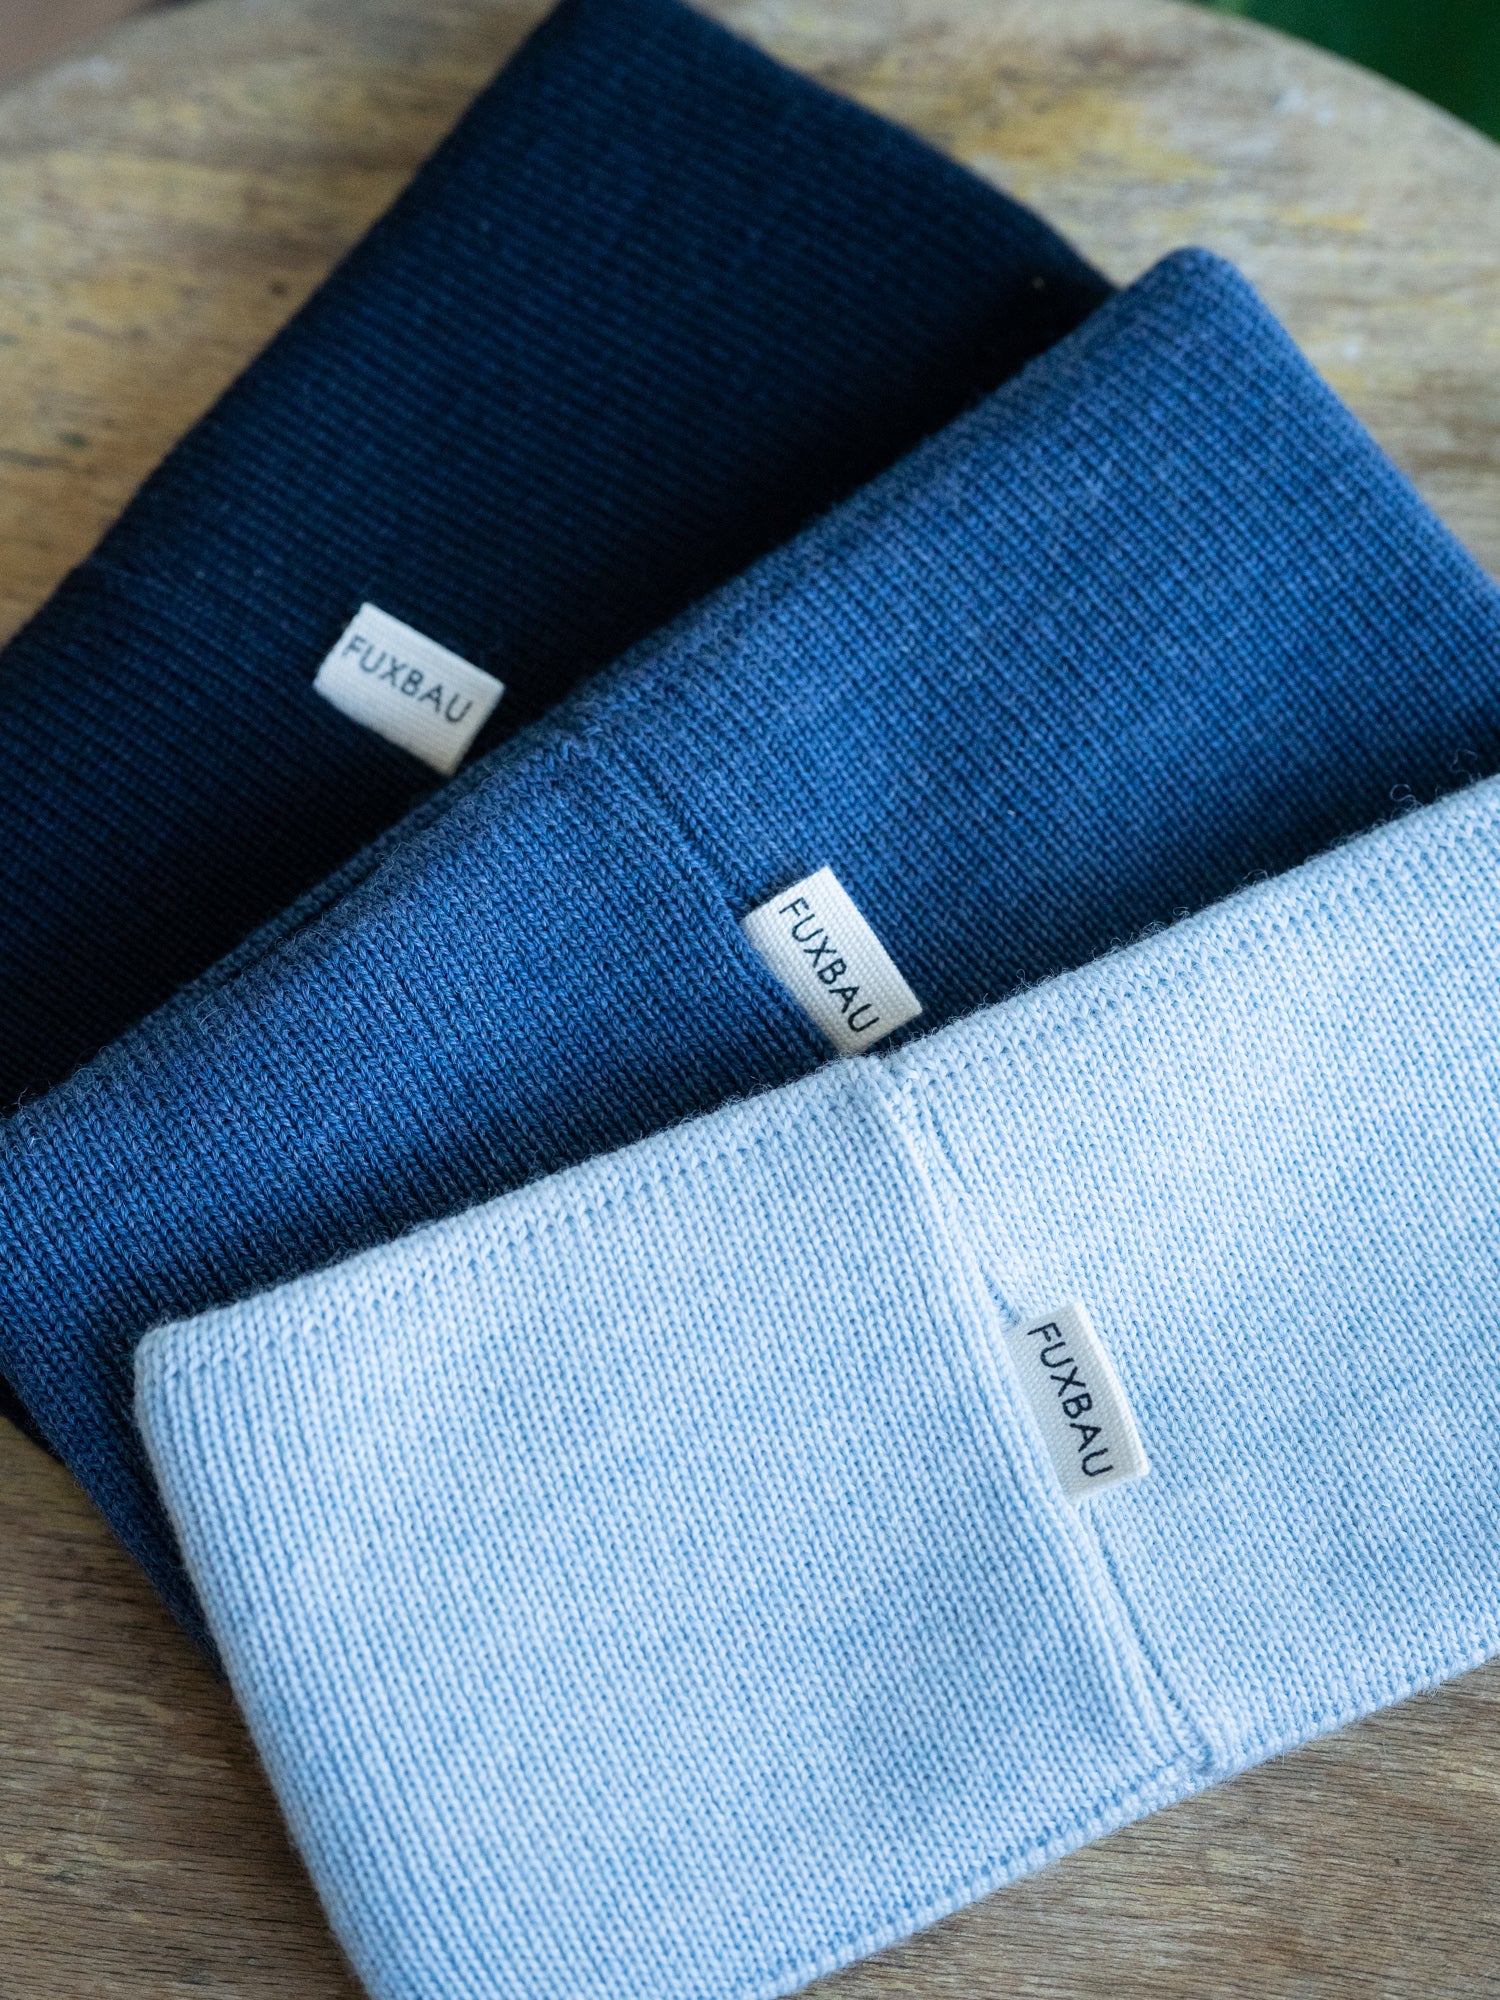 Nachhaltige FUXBAU Fair Fashion Merino Stirnbänder in den Farben navy, nachtblau und eisblau. Gestrick in Norddeutschland aus 100% GOTS zertifizierter Merino Schurwolle.